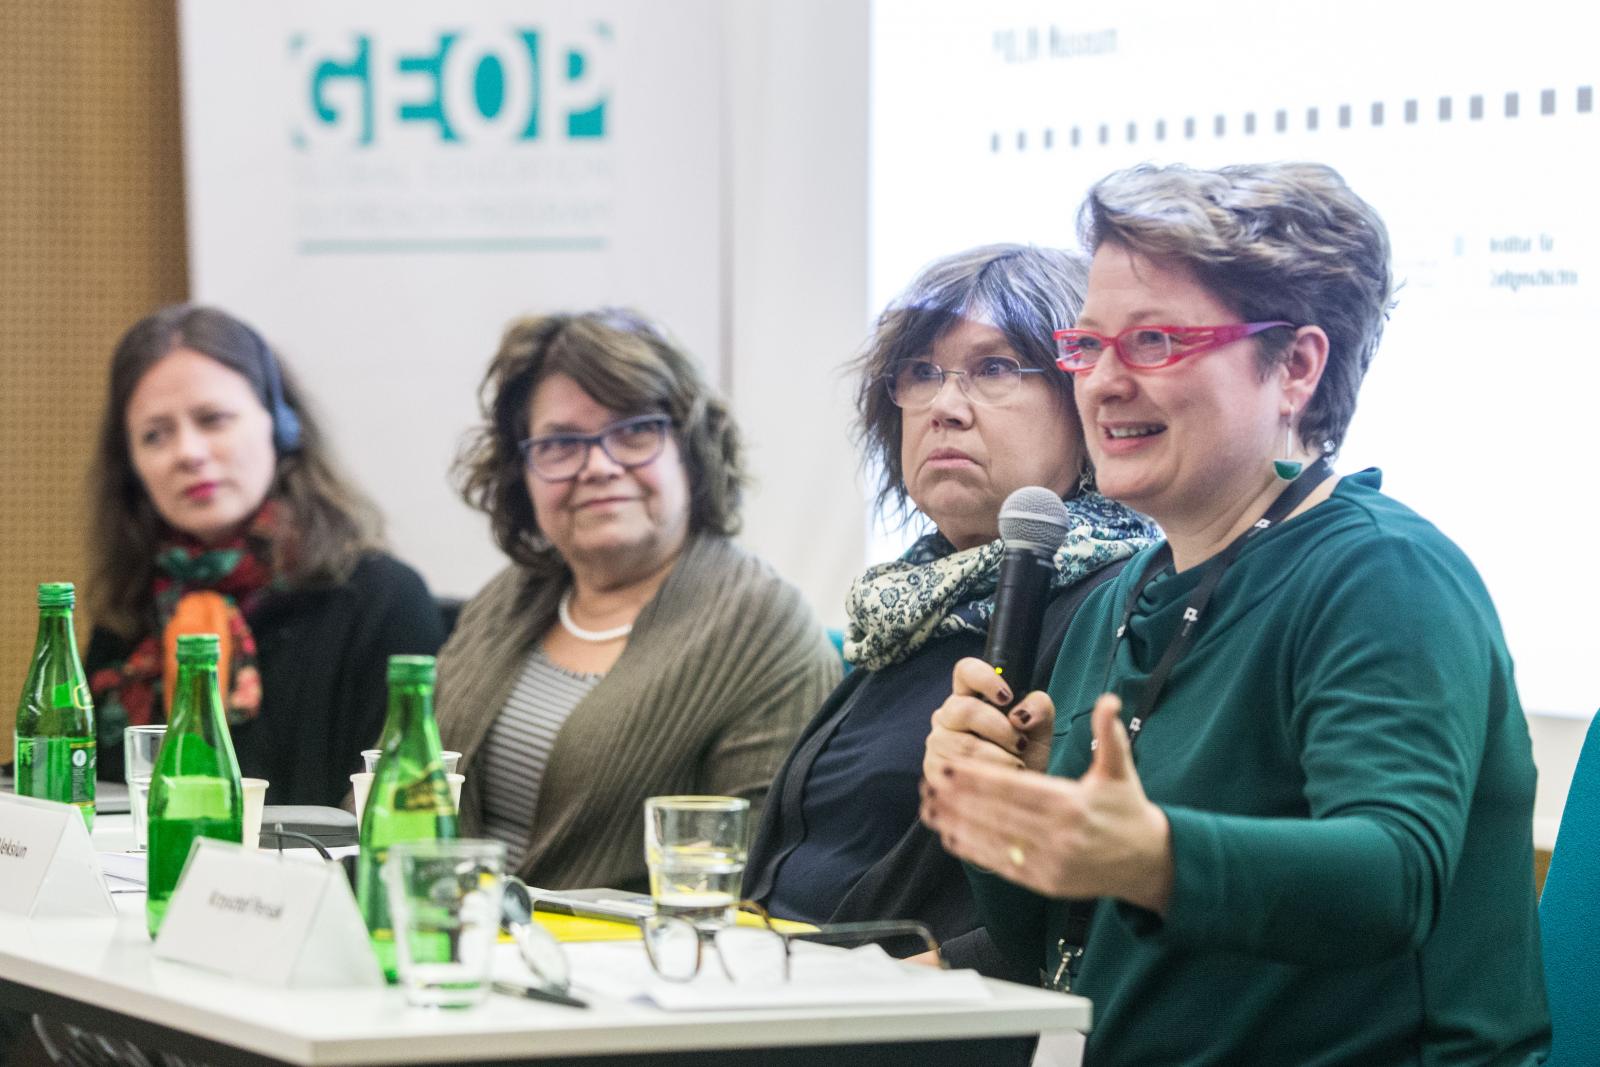 Konferencja "Żydzi w walce z nazistowskimi Niemcami podczas II wojny światowej". Na zdjęciu: przy stole plenarnym w sali wykładowej siedzą (od lewej): Andrea Löw, Anna Bikont, Barbara Engelking, Natalia Aleksiun